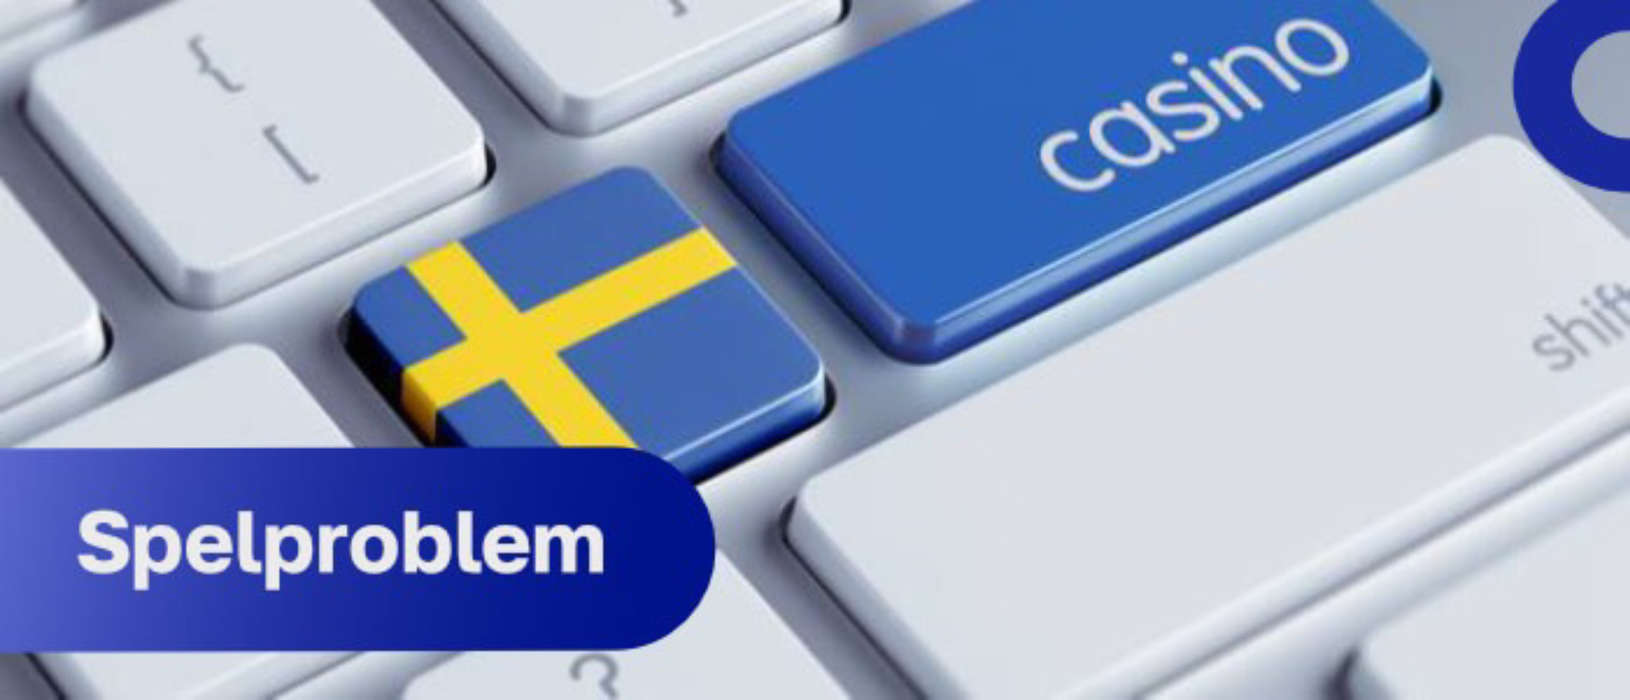 Datortangentbord med en svensk flagga, en "casino"-nyckel och ordet "spelproblem", som lyfter fram problem relaterade till spelberoende i Sverige. Inkluderar en 'stänga ute